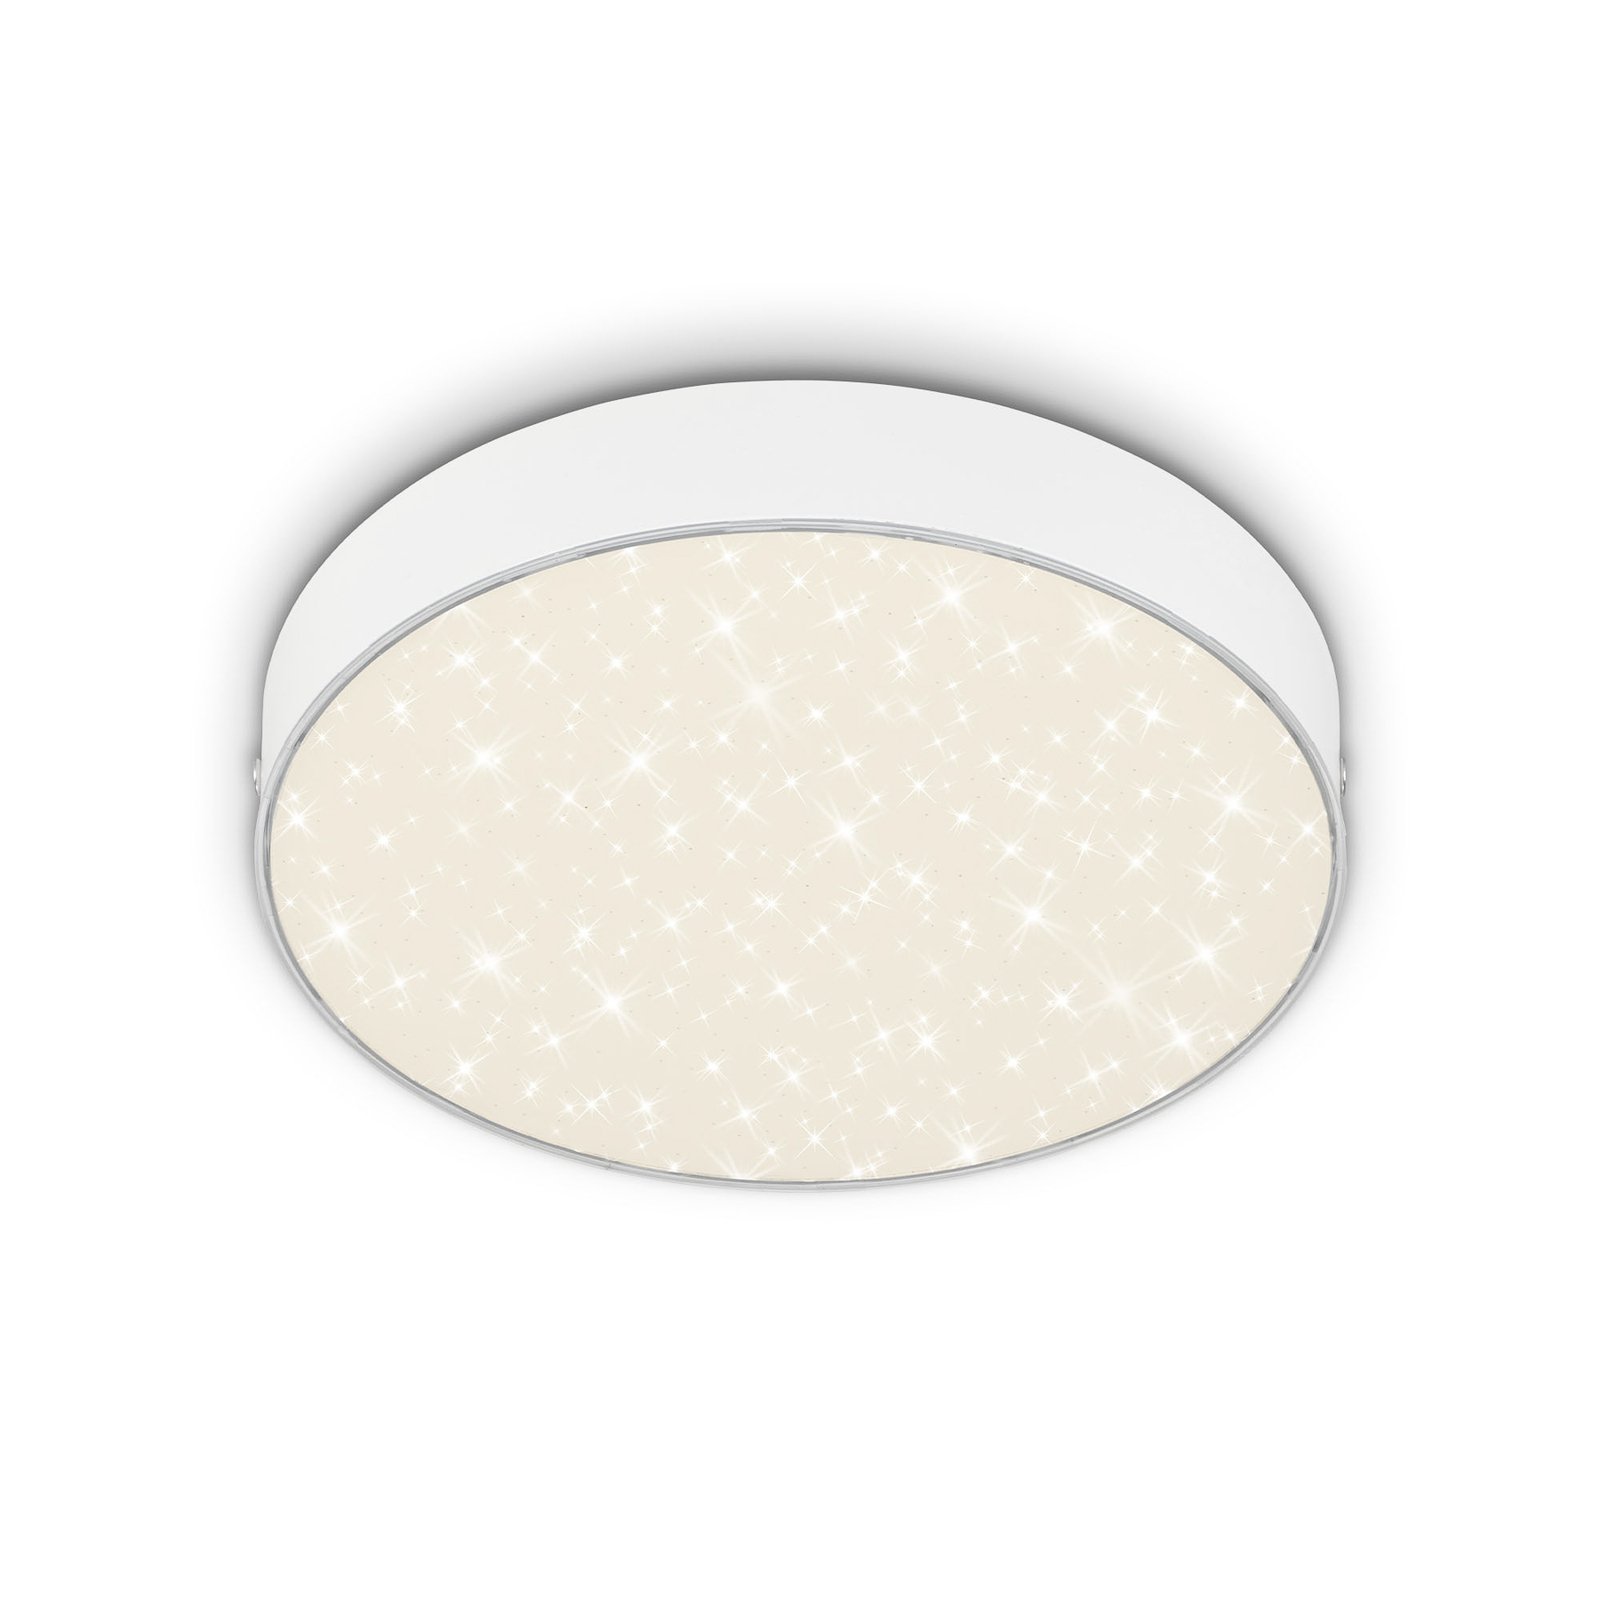 Flame Star LED ceiling light, Ø 21.2 cm, white